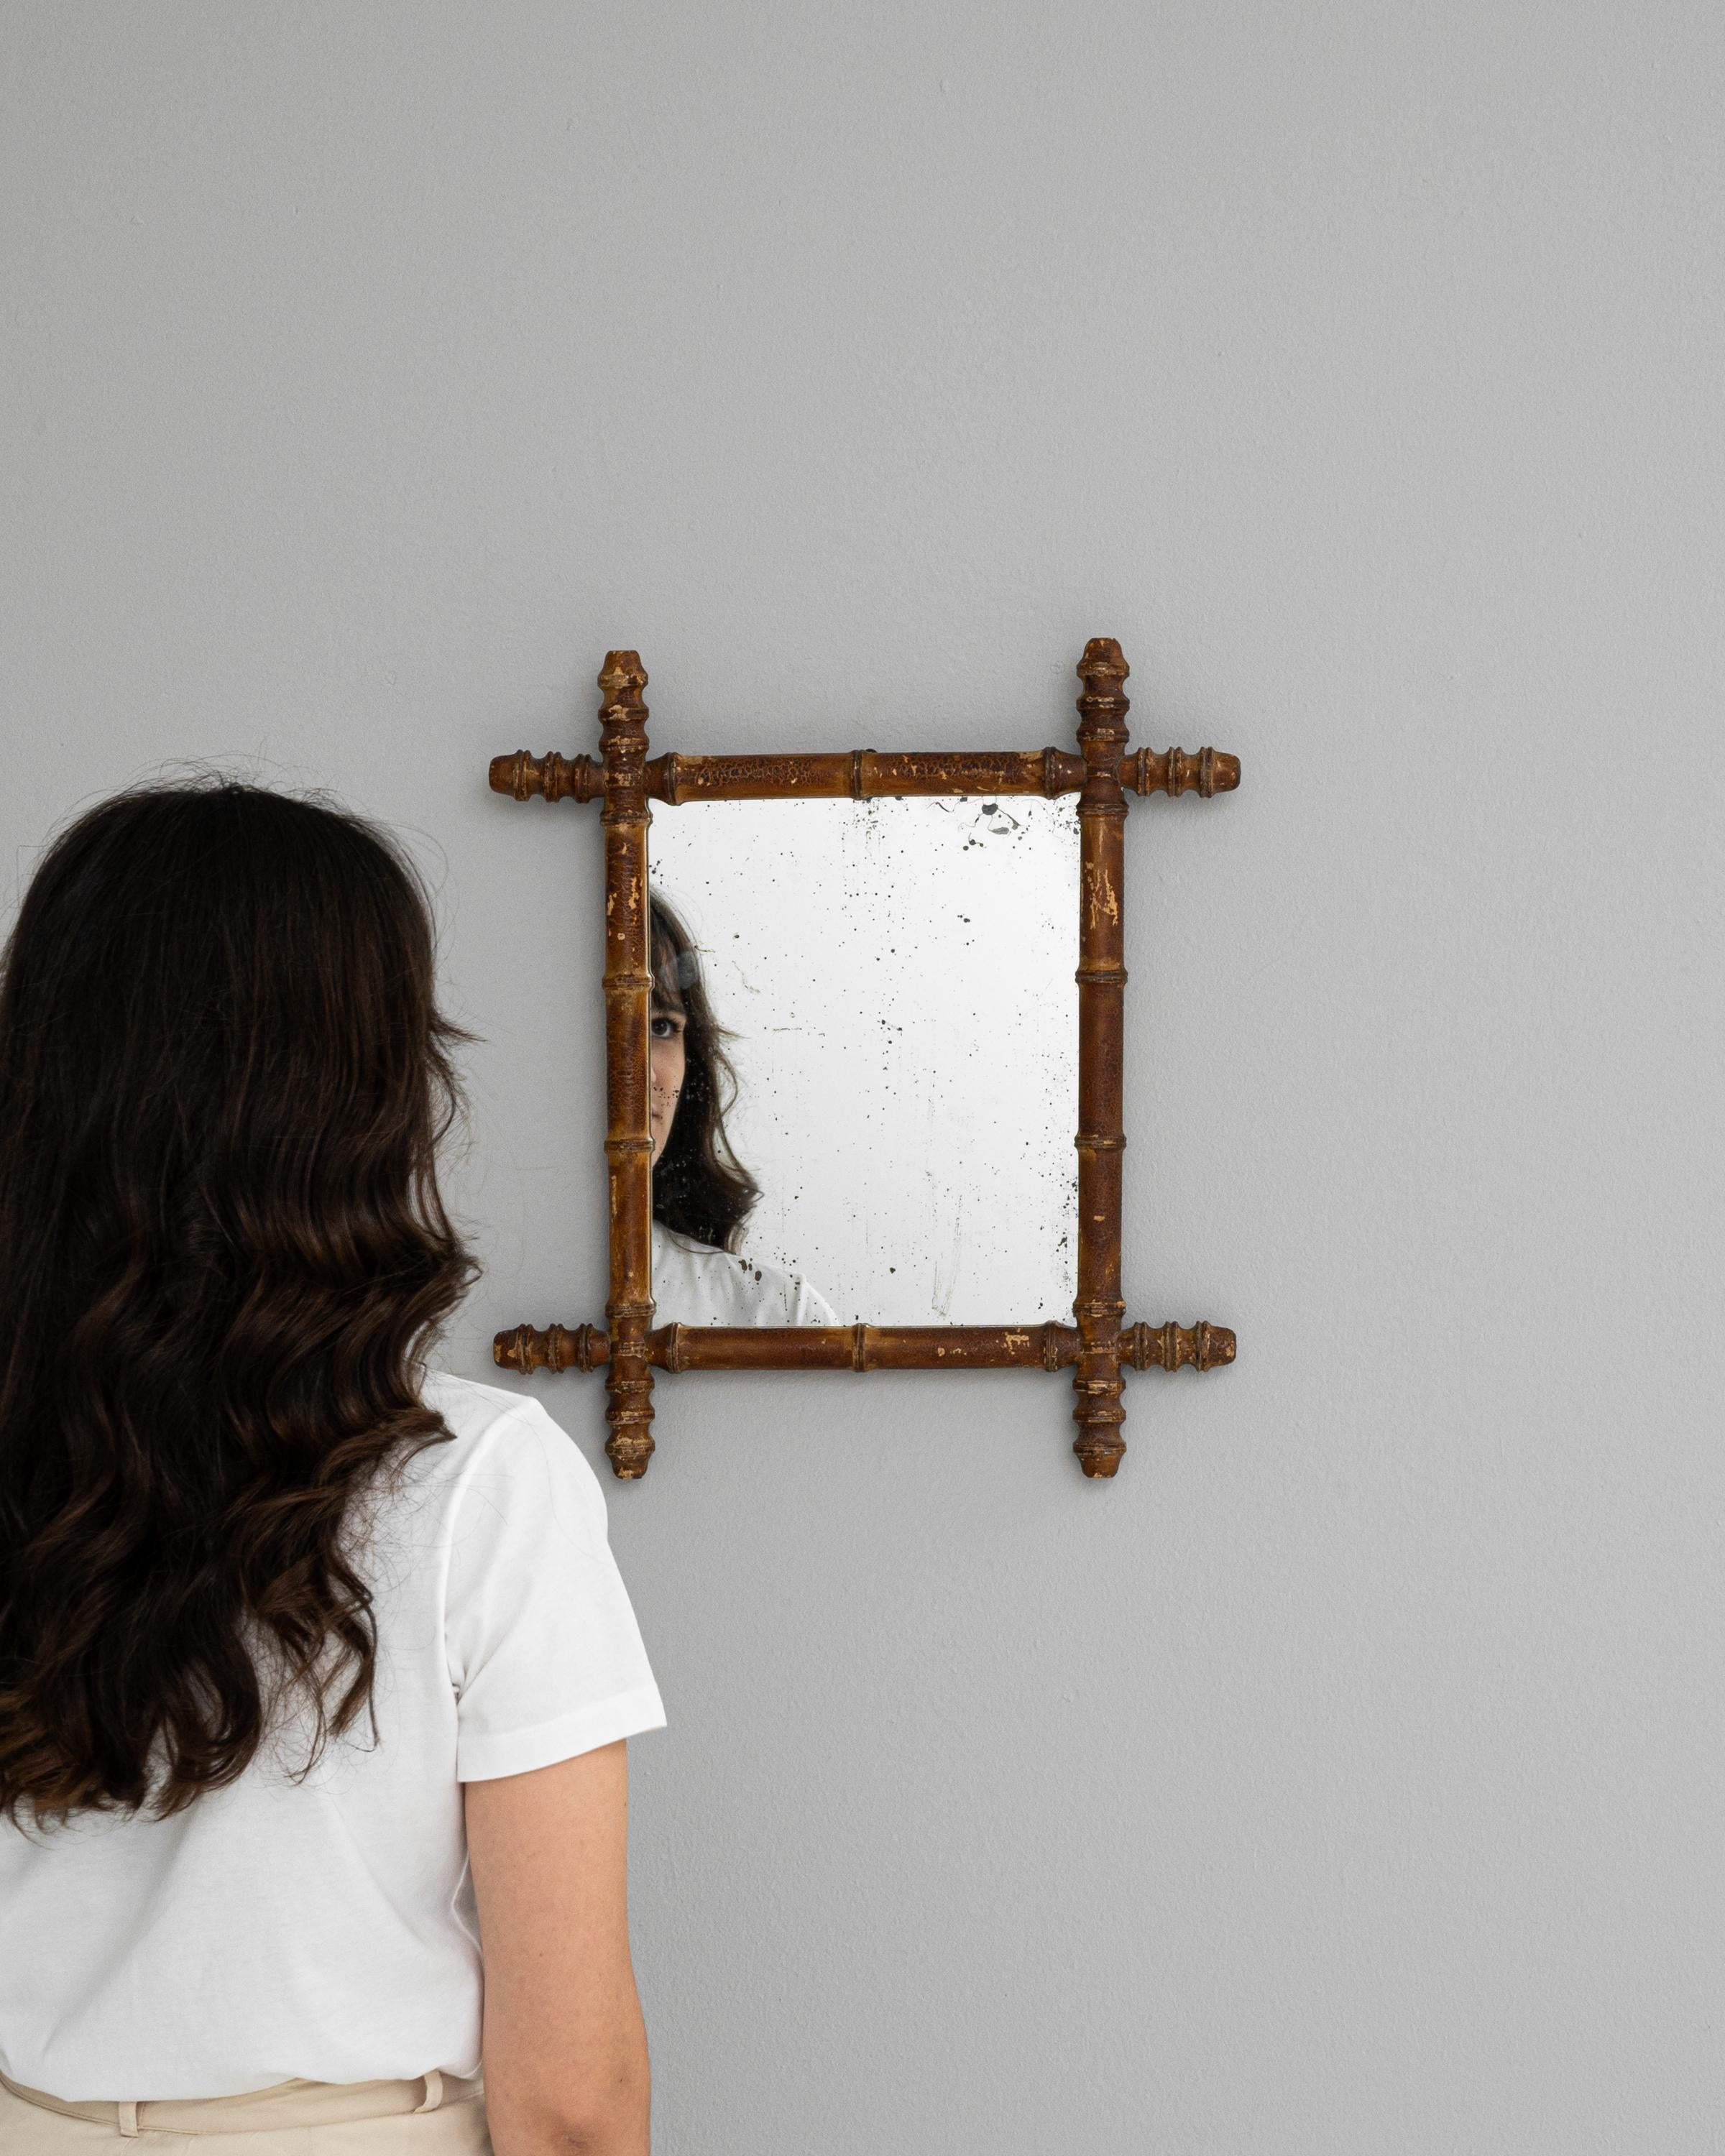 Dieser französische Holzspiegel aus der Zeit um 1900 verleiht jedem Raum einen unverwechselbaren Hauch von rustikaler Raffinesse. Sein Charakter wird durch eine warme, honigfarbene Patina unterstrichen, während die gedrechselten, spindelförmigen